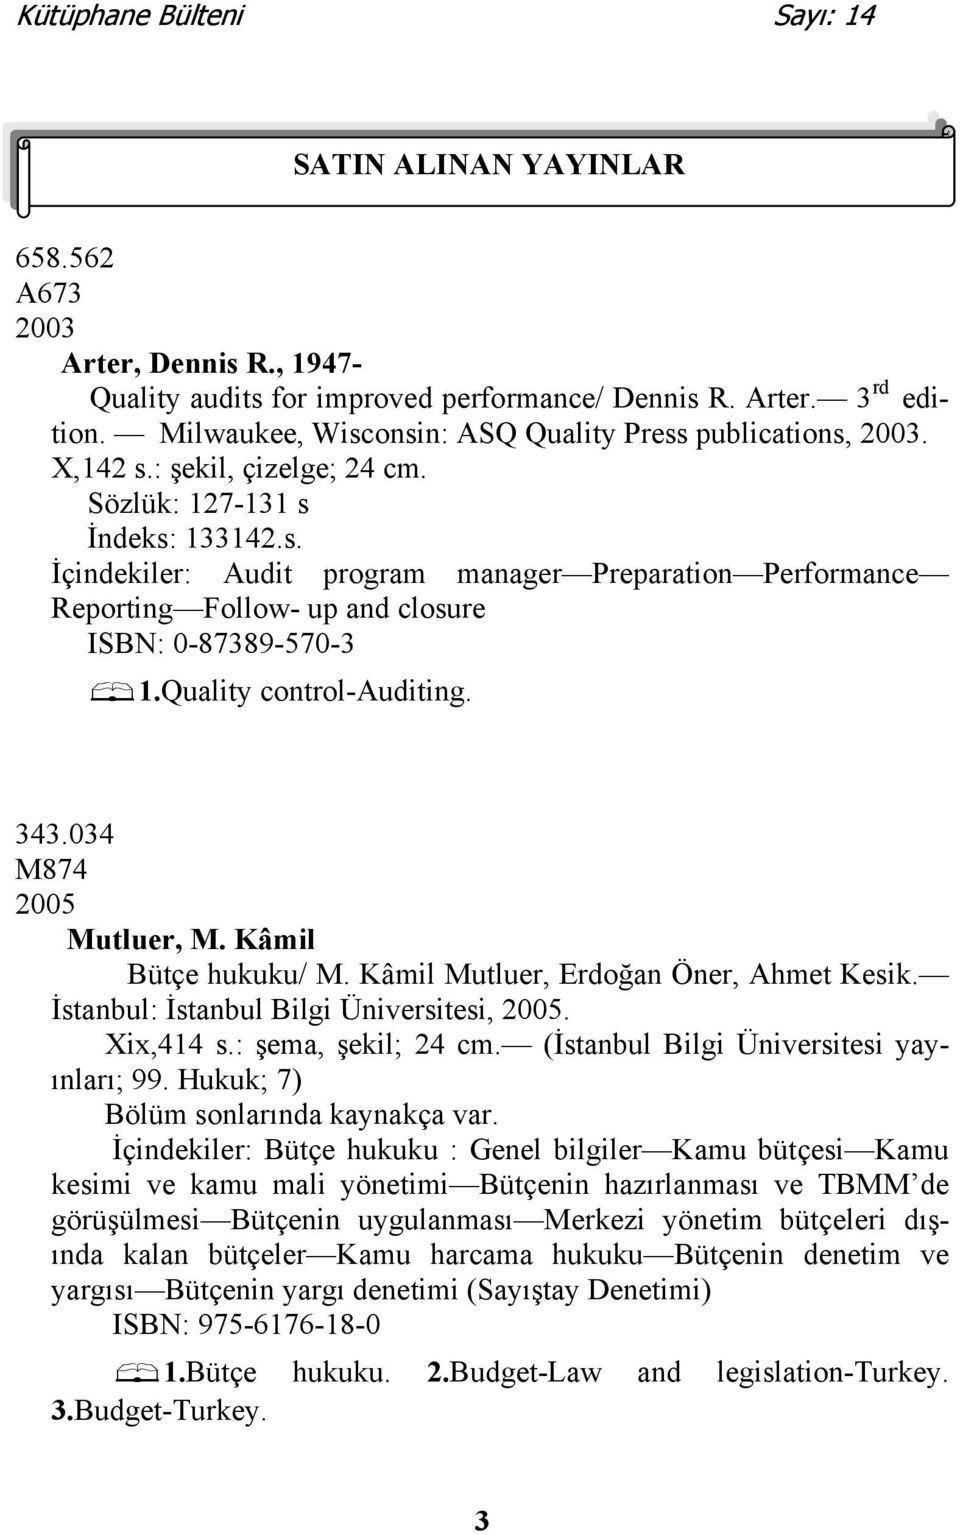 Quality control-auditing. 343.034 M874 2005 Mutluer, M. Kâmil Bütçe hukuku/ M. Kâmil Mutluer, Erdoğan Öner, Ahmet Kesik. İstanbul: İstanbul Bilgi Üniversitesi, 2005. Xix,414 s.: şema, şekil; 24 cm.